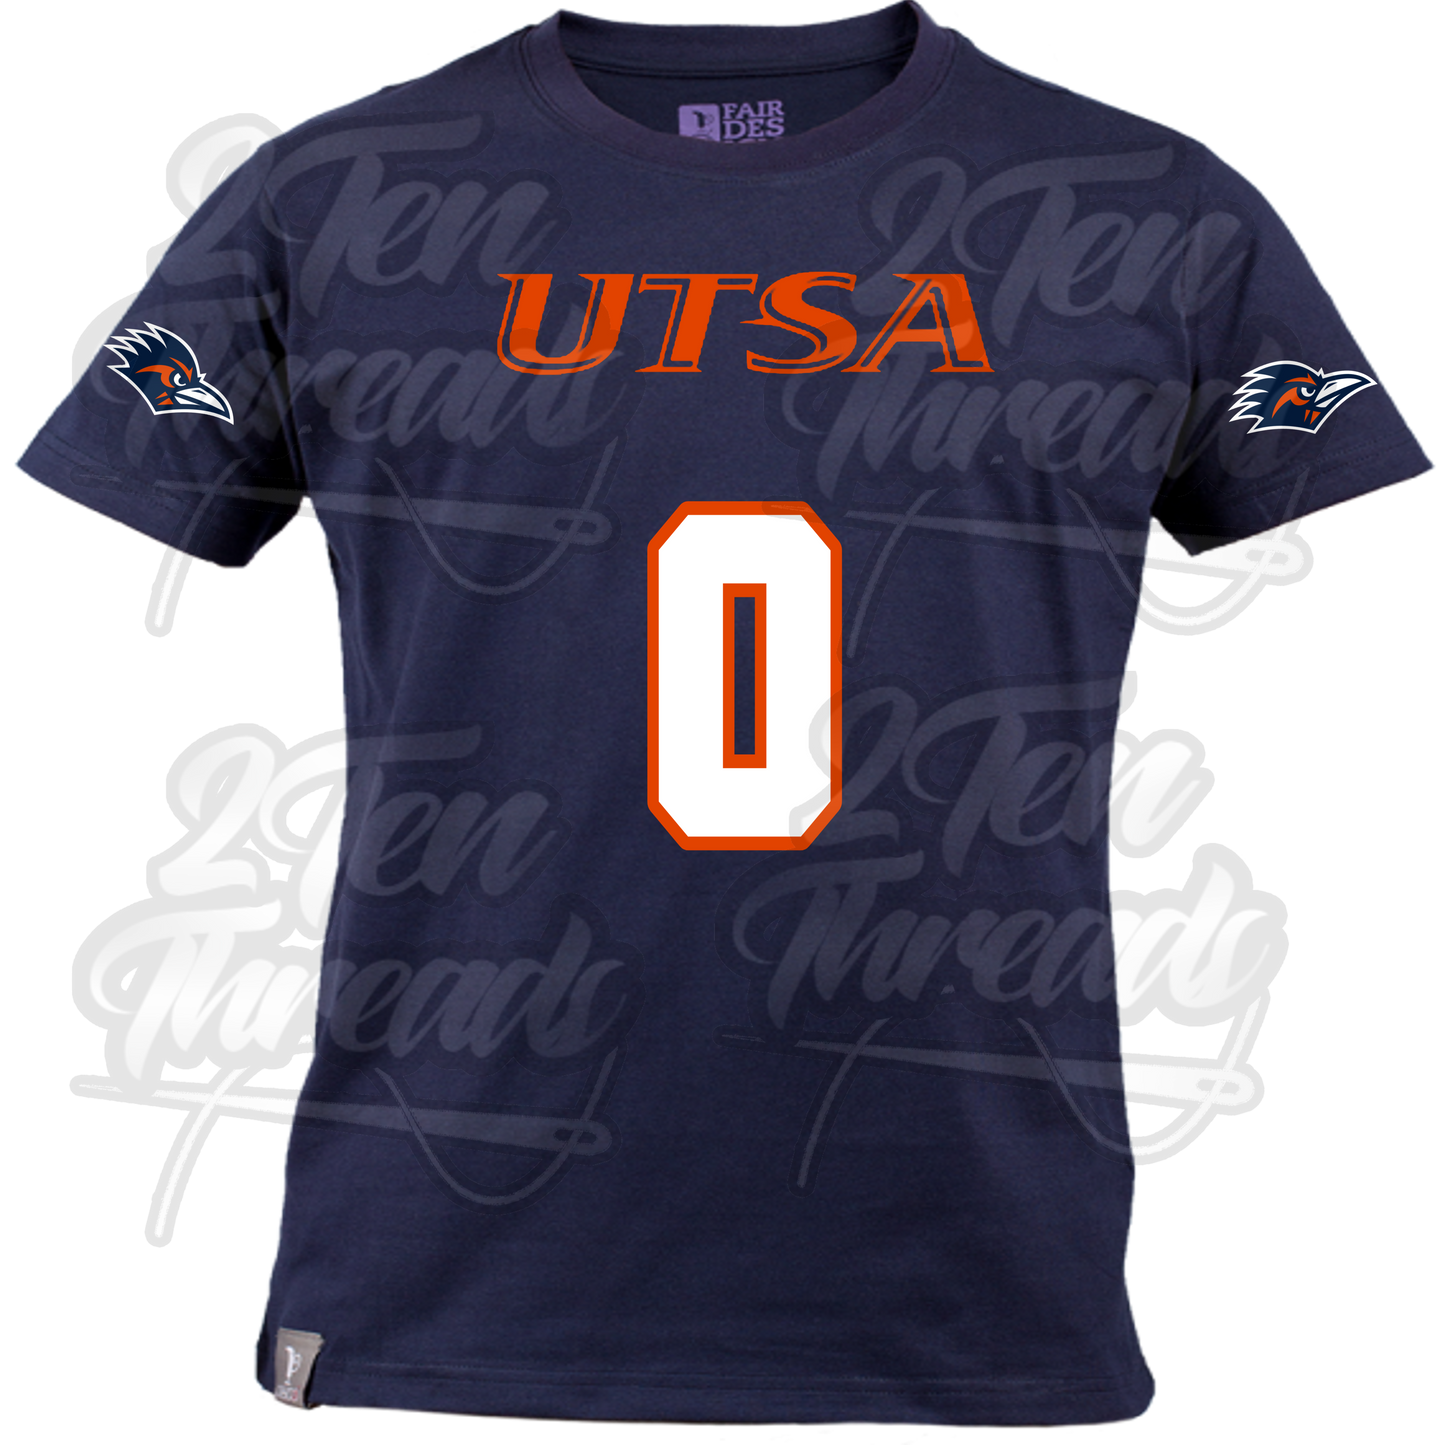 UTSA Customizable Jersey Shirts!